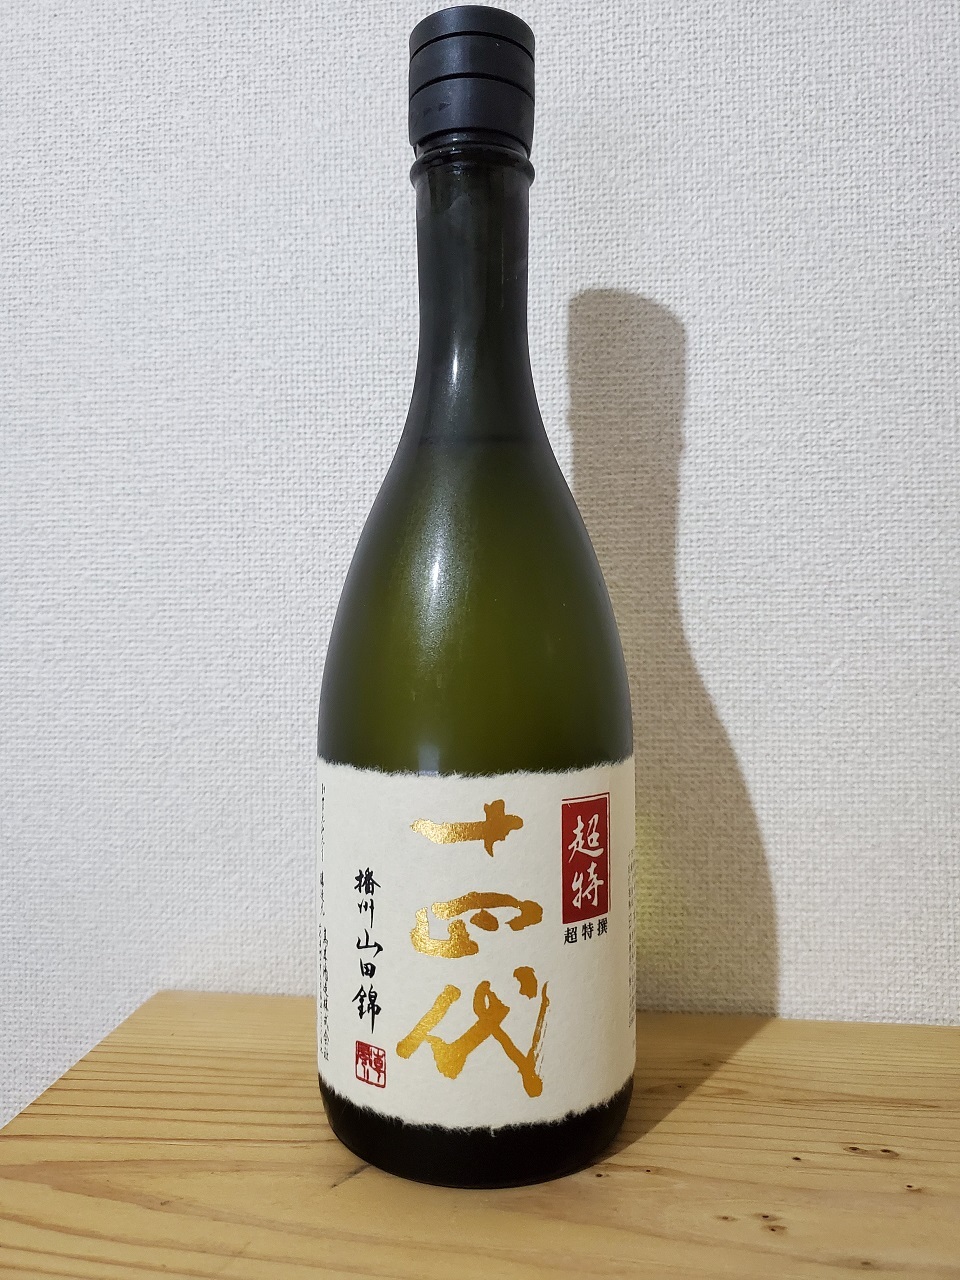 【1409】十四代 超特撰 純米大吟醸 2019BY | 日本酒感想日誌